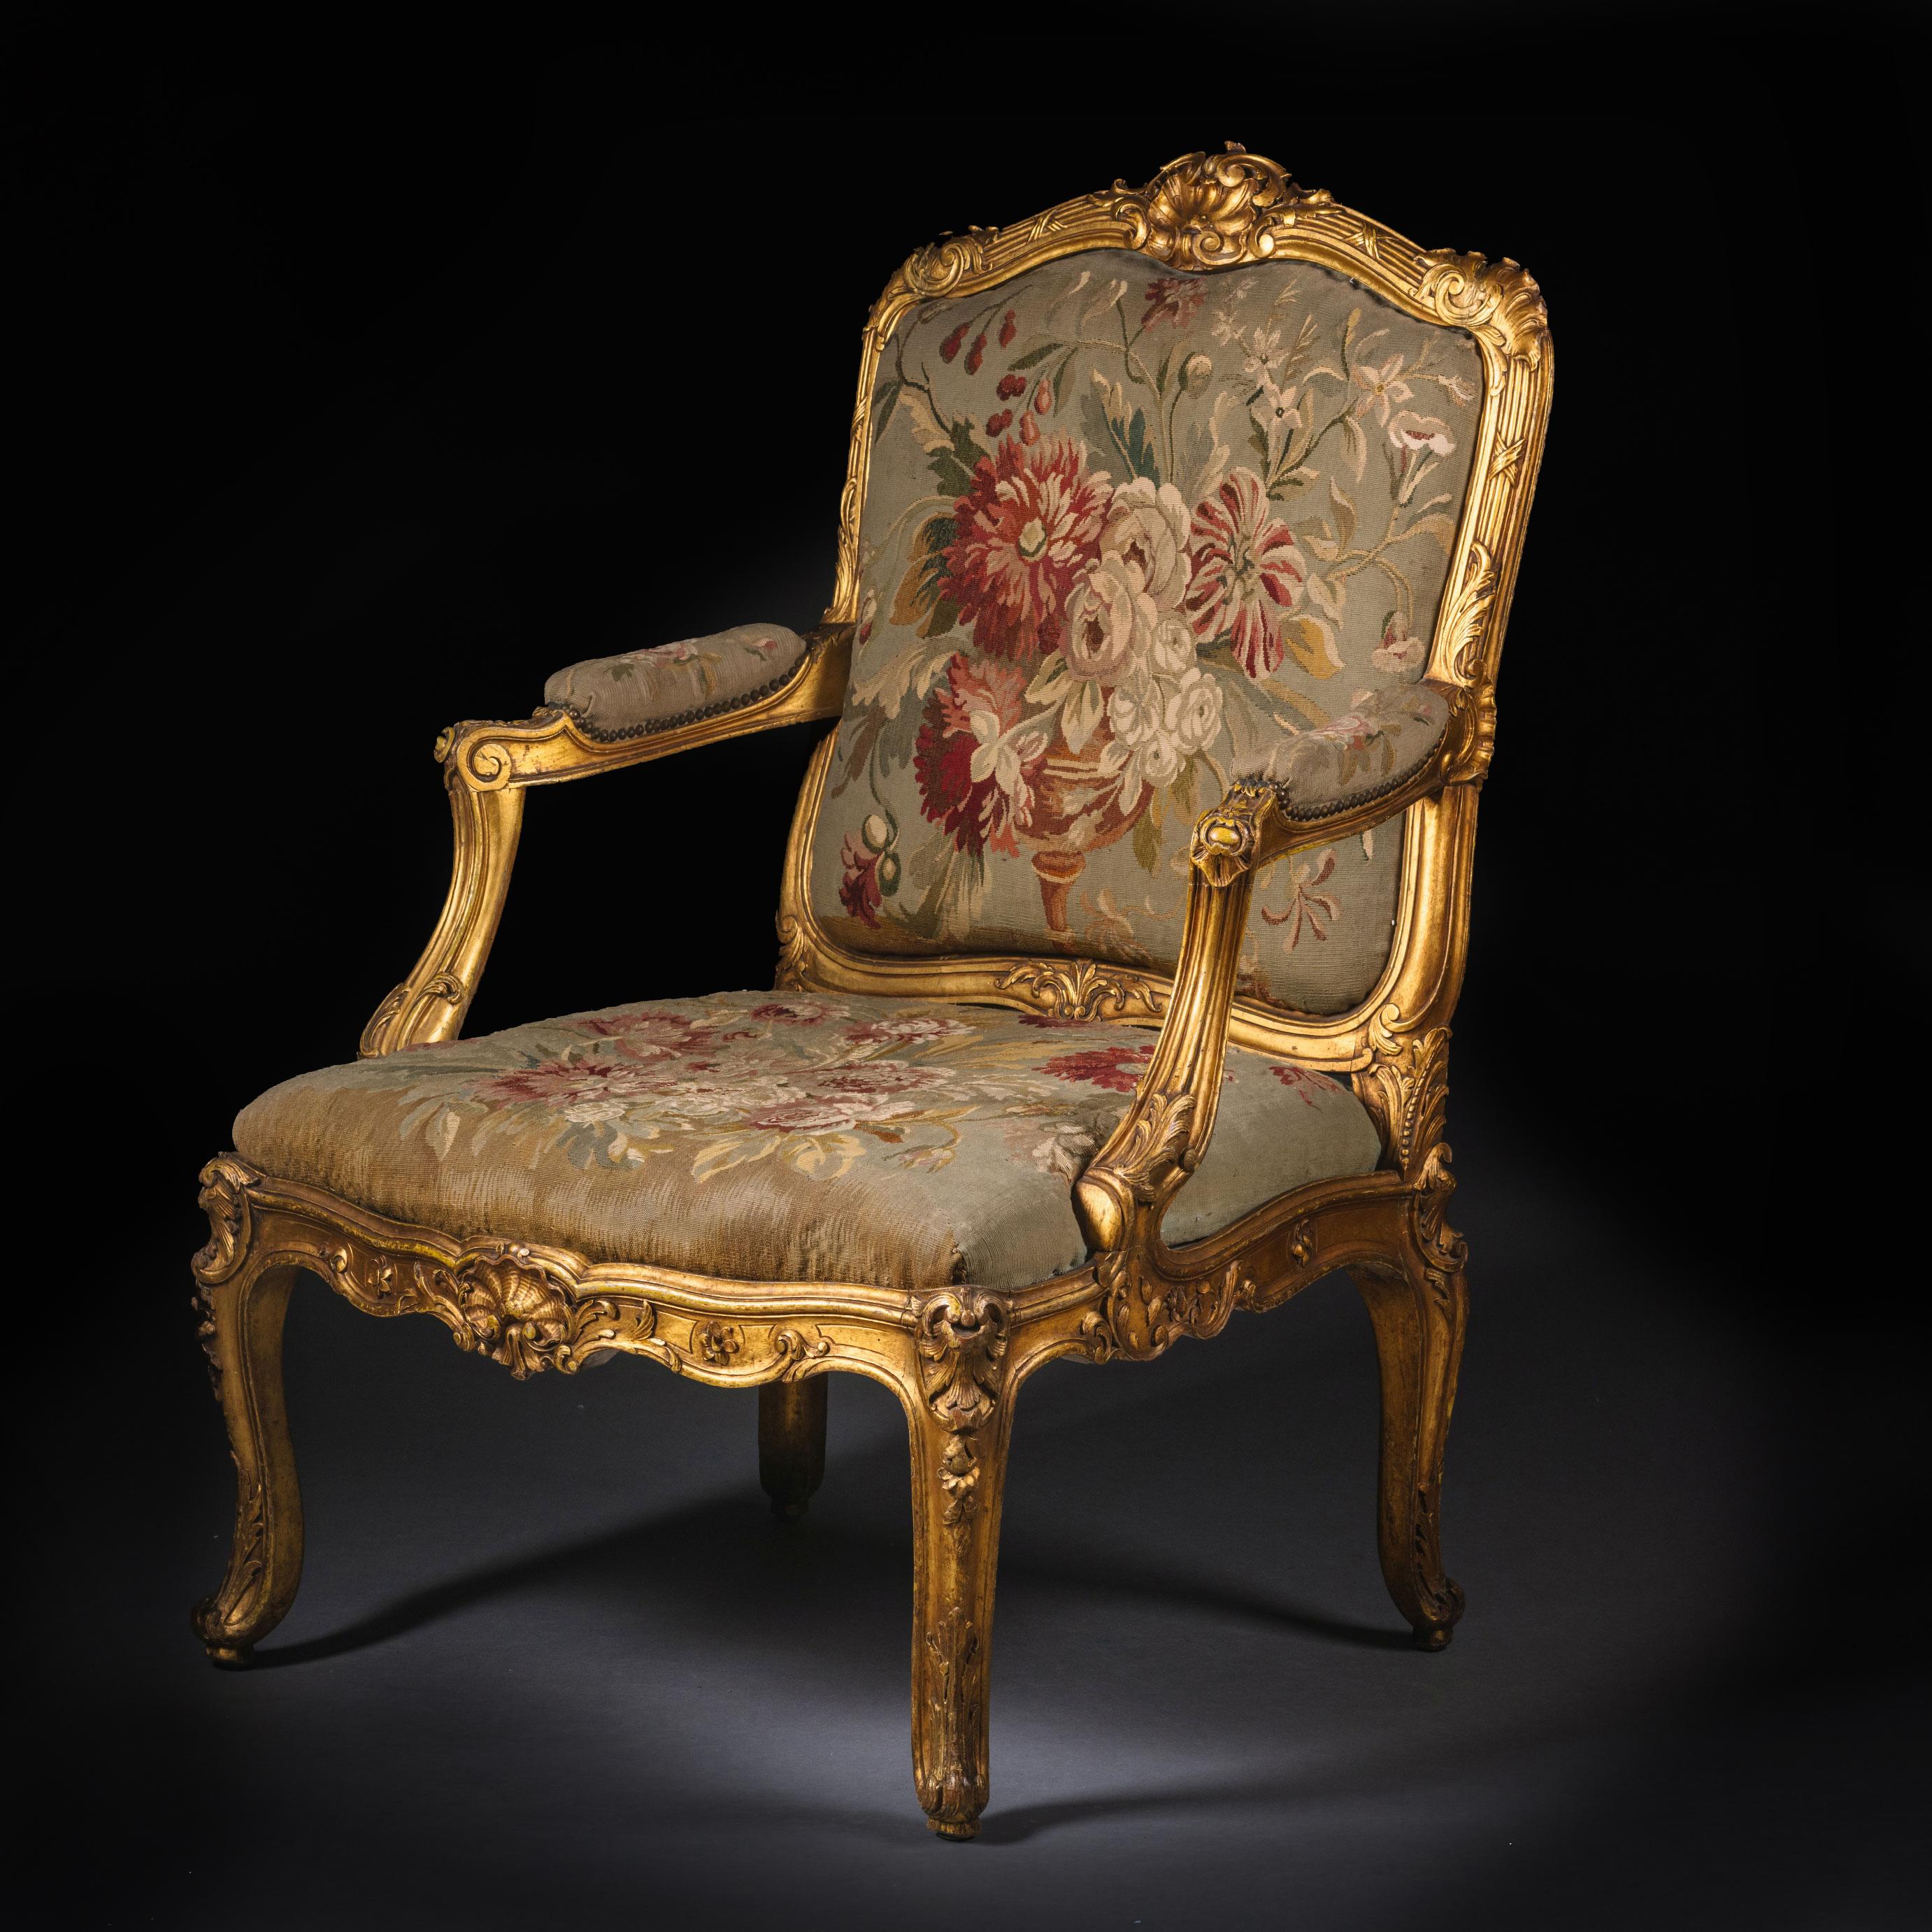 Fauteuil Napoléon III en bois sculpté et doré à la manière de Michele Cruchet.

Ce beau fauteuil est richement sculpté de feuillages, de coquillages et de C.C. Il est garni de tapisserie florale de Beauvais. 

Les proportions généreuses,